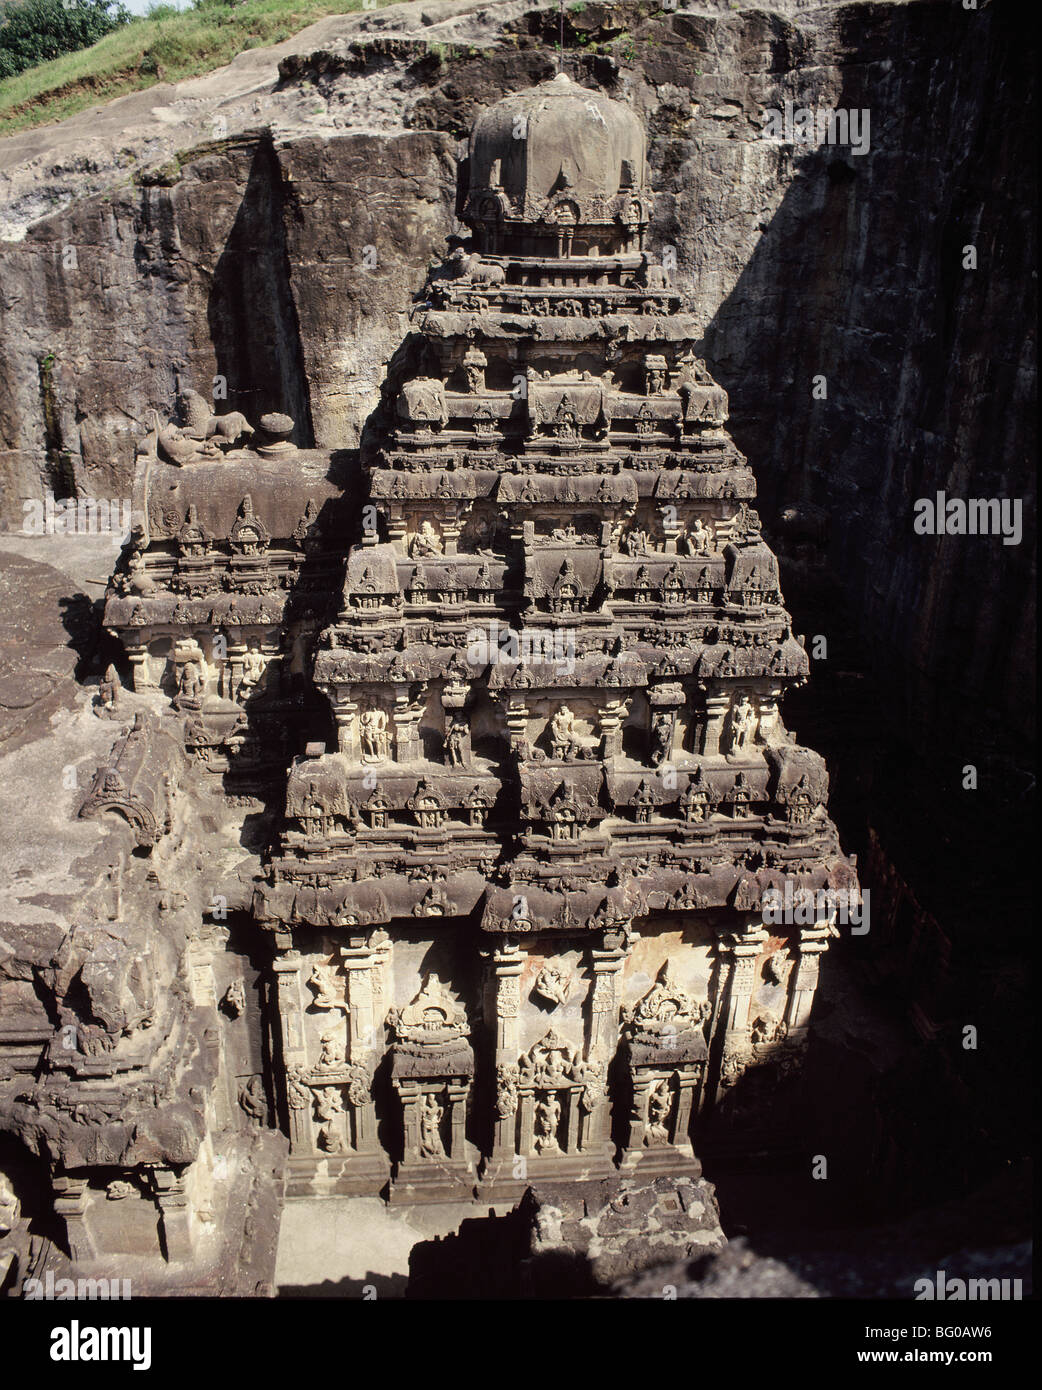 Der Kailasanatha-Tempel aus dem 8. Jahrhundert n. Chr., Ellora, UNESCO-Weltkulturerbe, Maharashtra, Indien, Asien Stockfoto